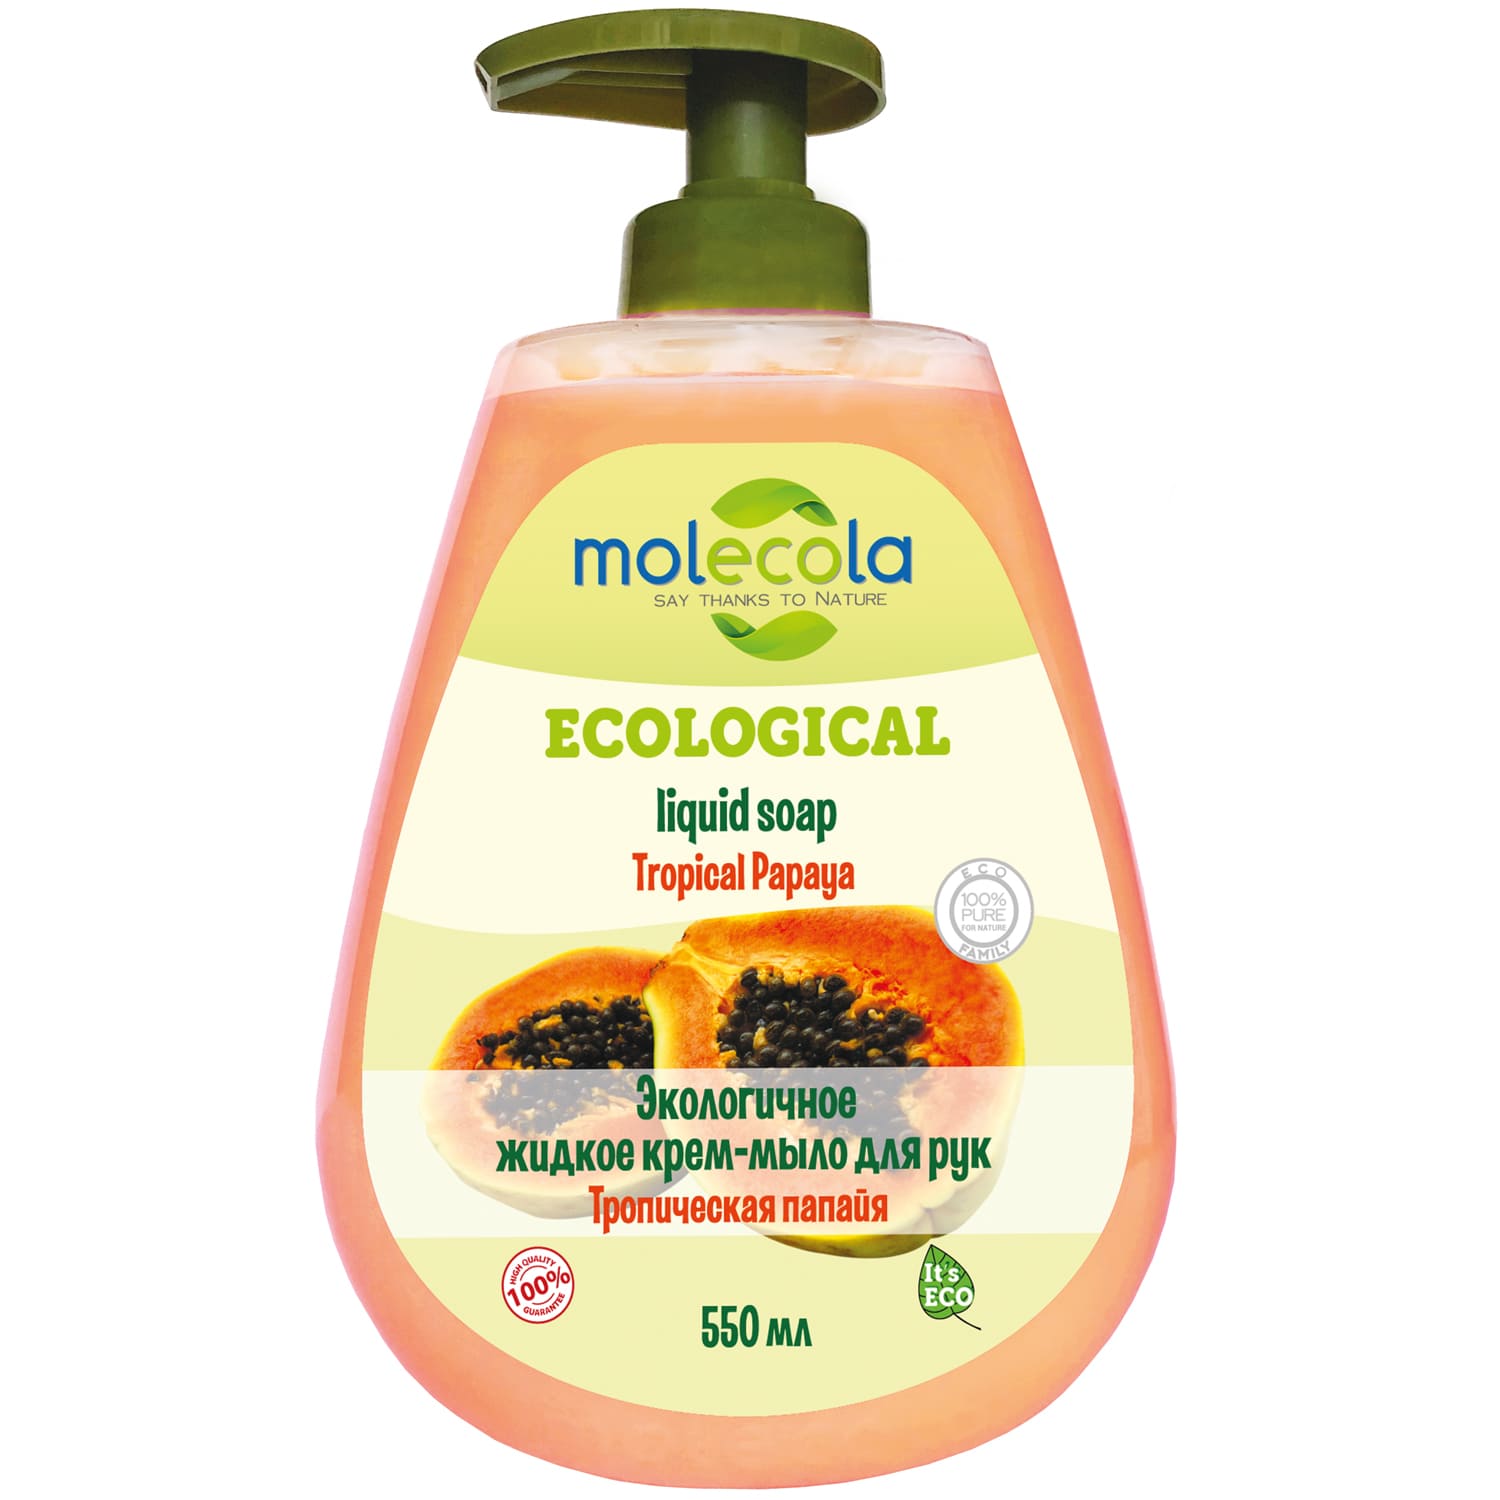 Molecola Экологичное крем - мыло для рук Тропическая папайя, 500 мл (Molecola, Жидкое мыло) мыло жидкое для рук molecola апельсин 500 мл